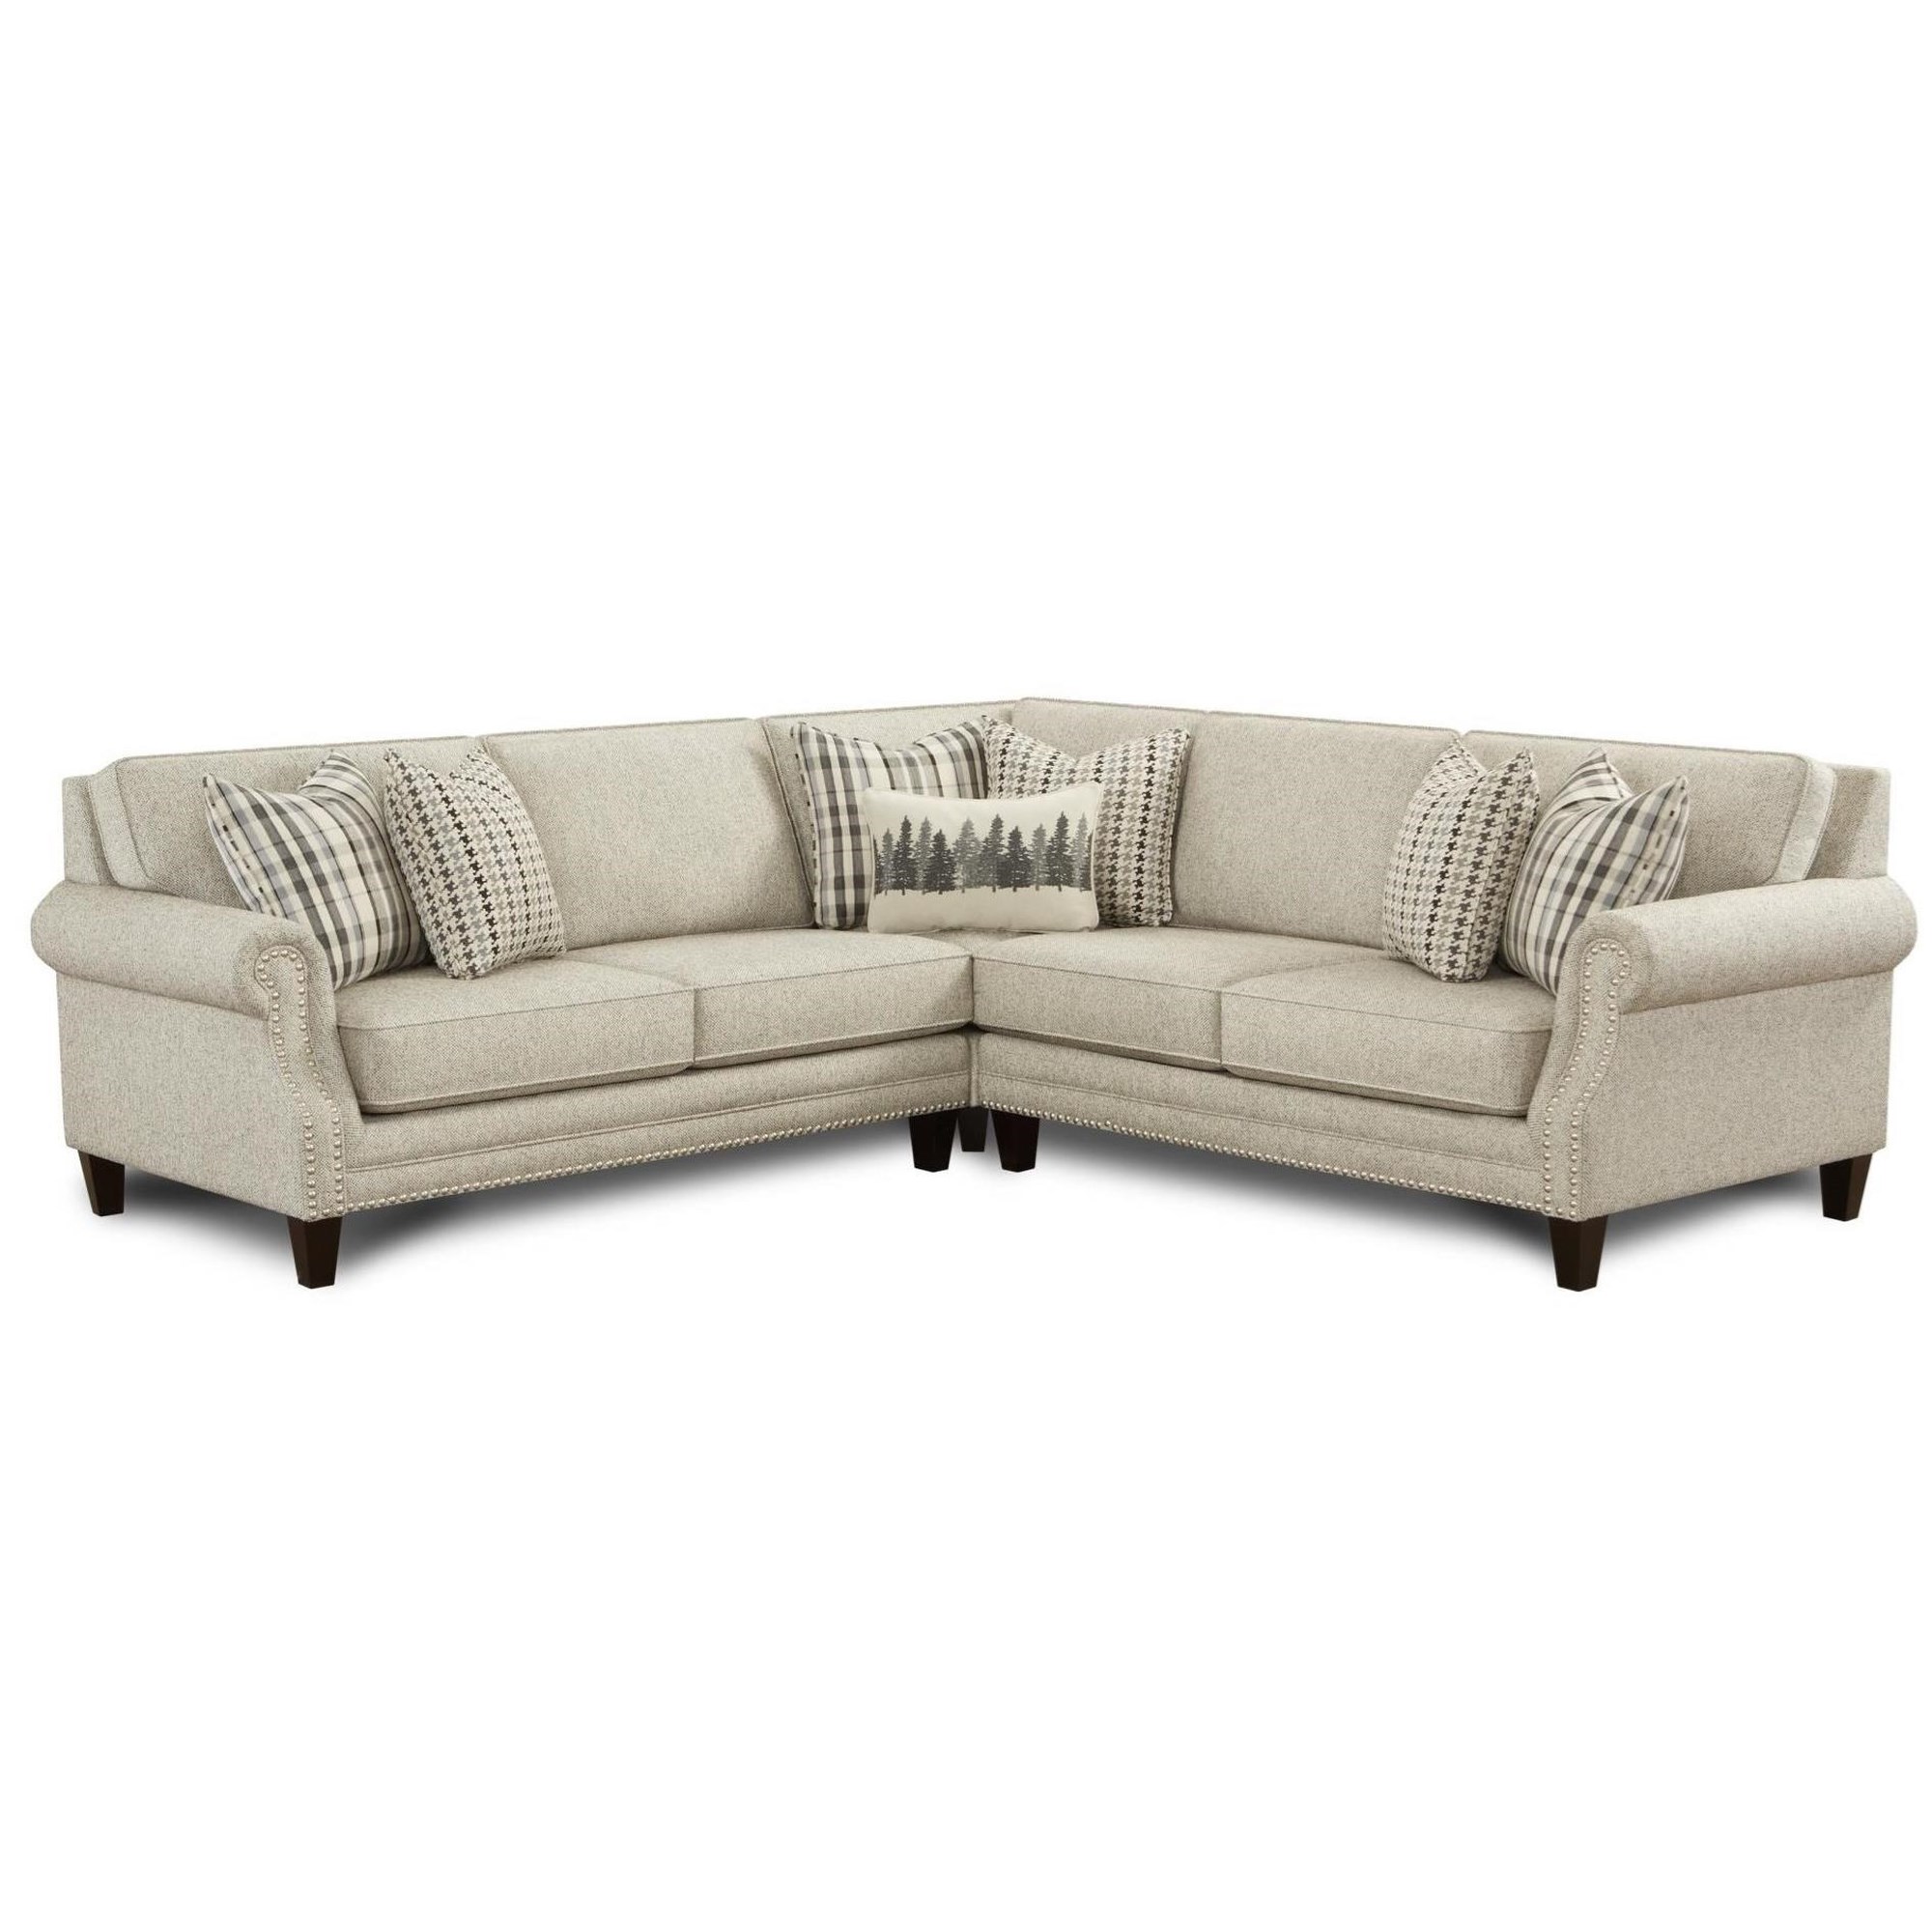 Berber Lumbar Pillow  Modern sofa sectional, Living room, Modular